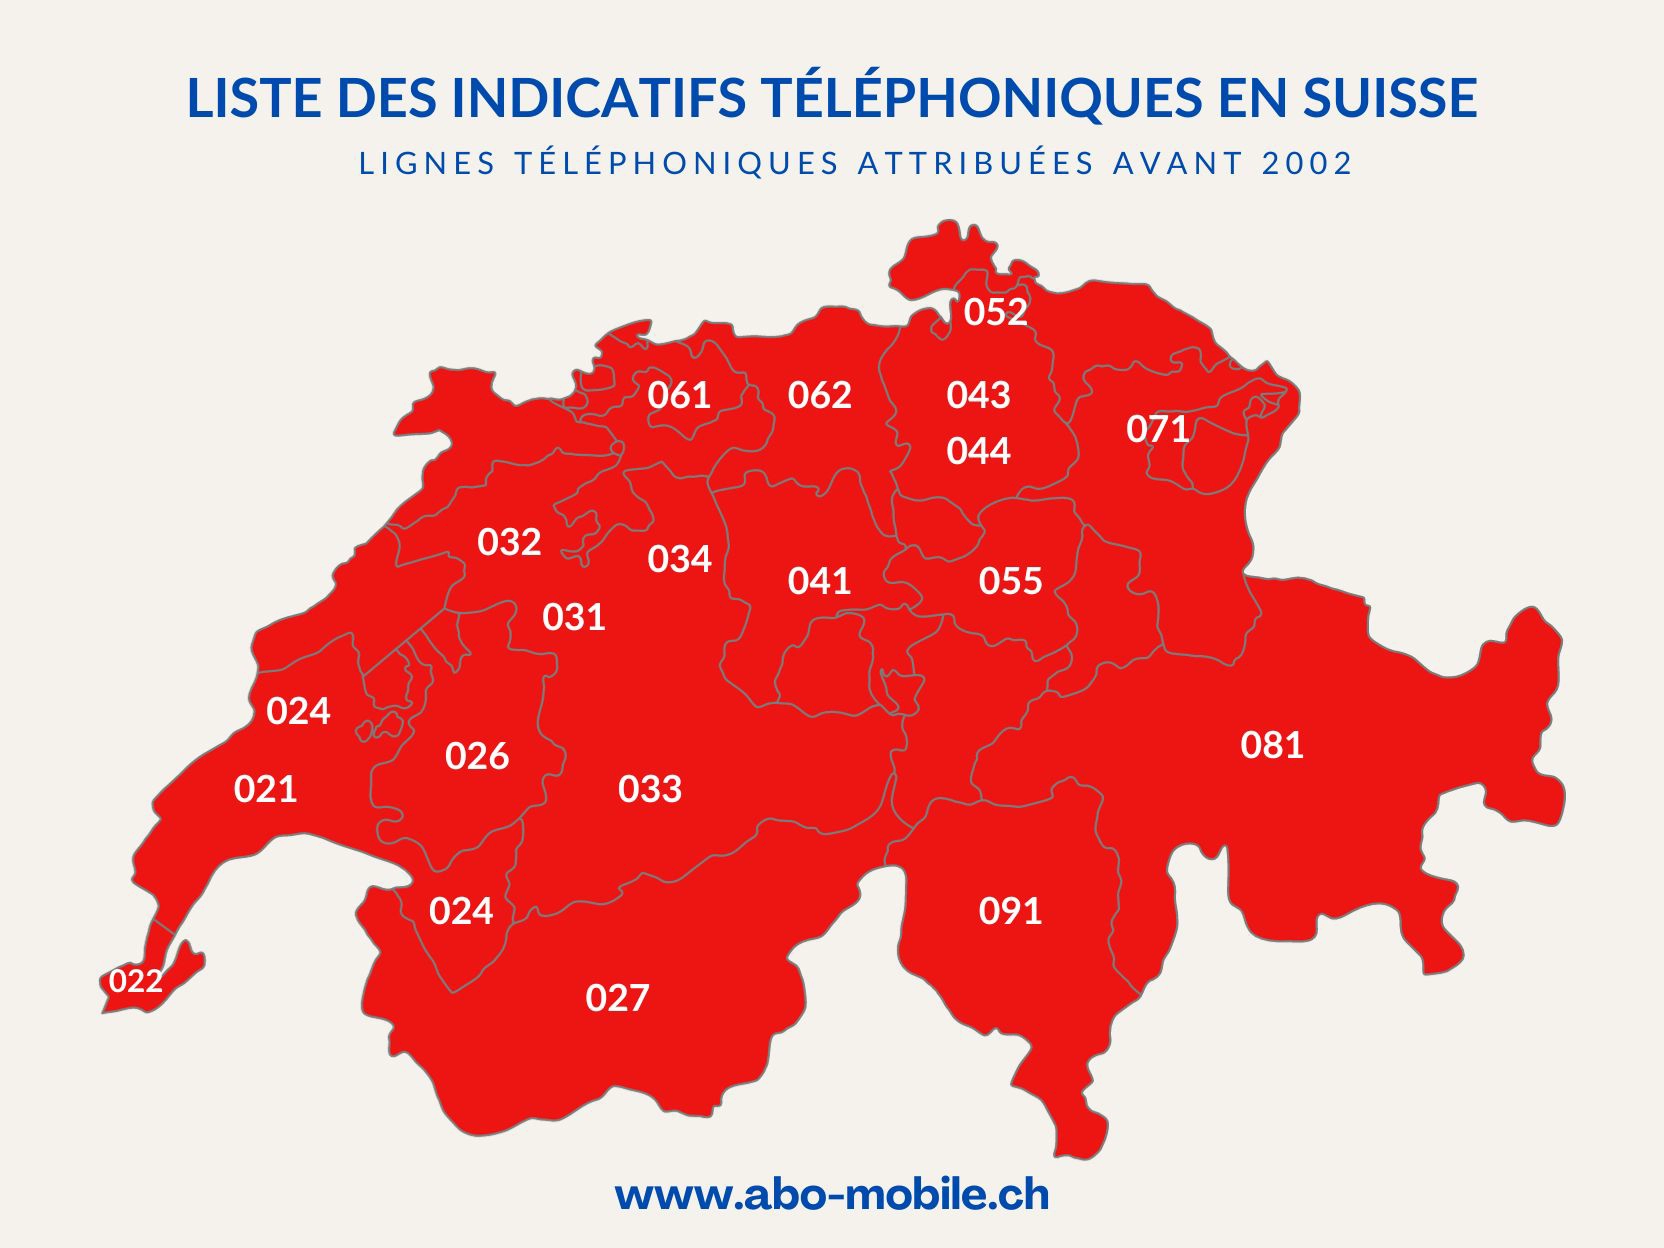 Liste des indicatifs téléphoniques régionaux en Suisse